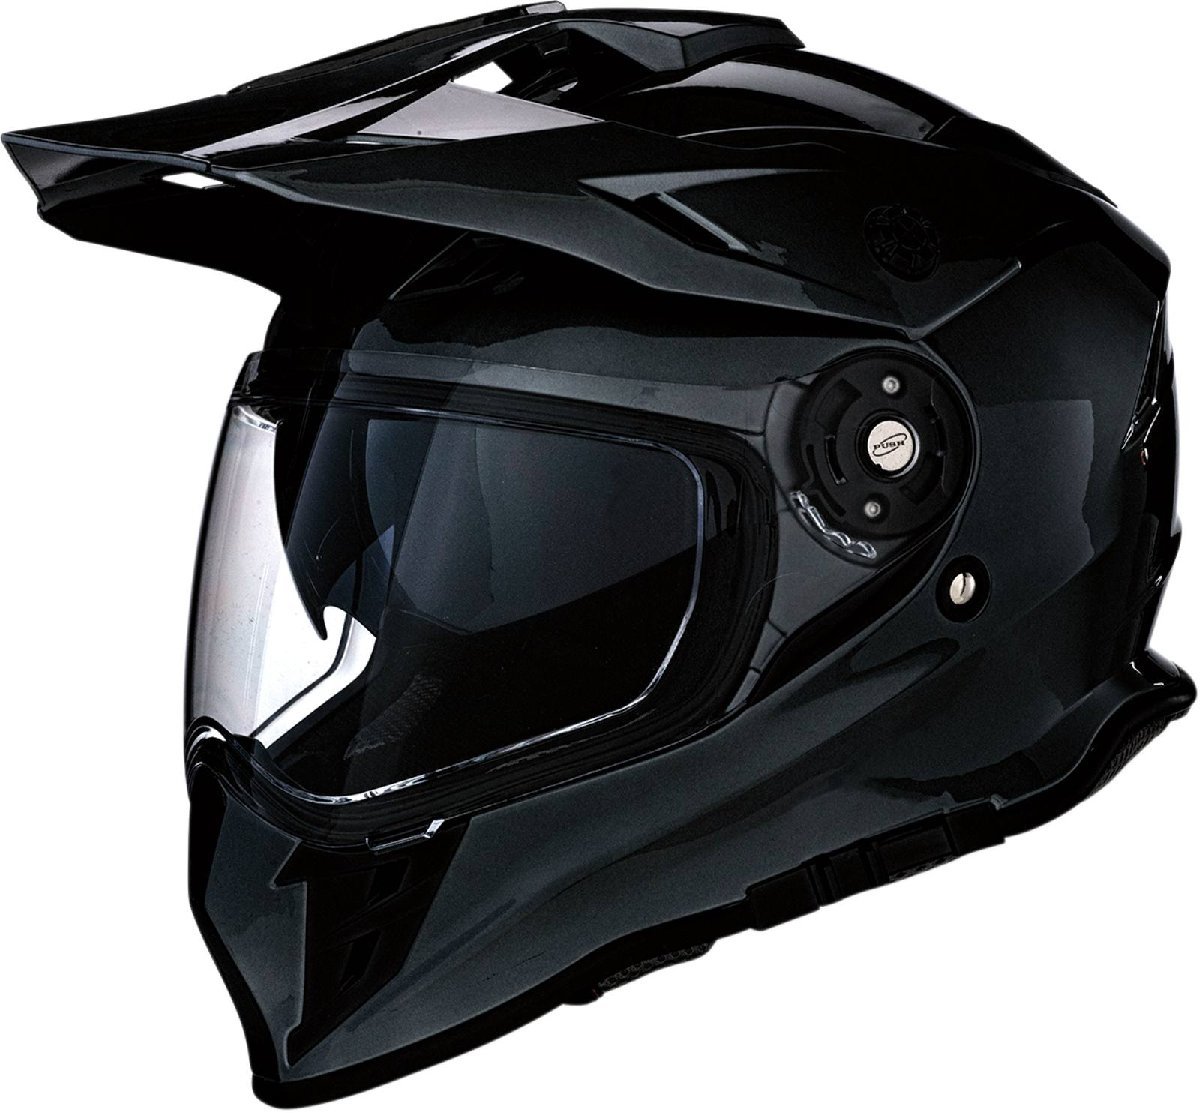 Lサイズ - ブラック - Z1R Range デュアルスポーツ ヘルメット